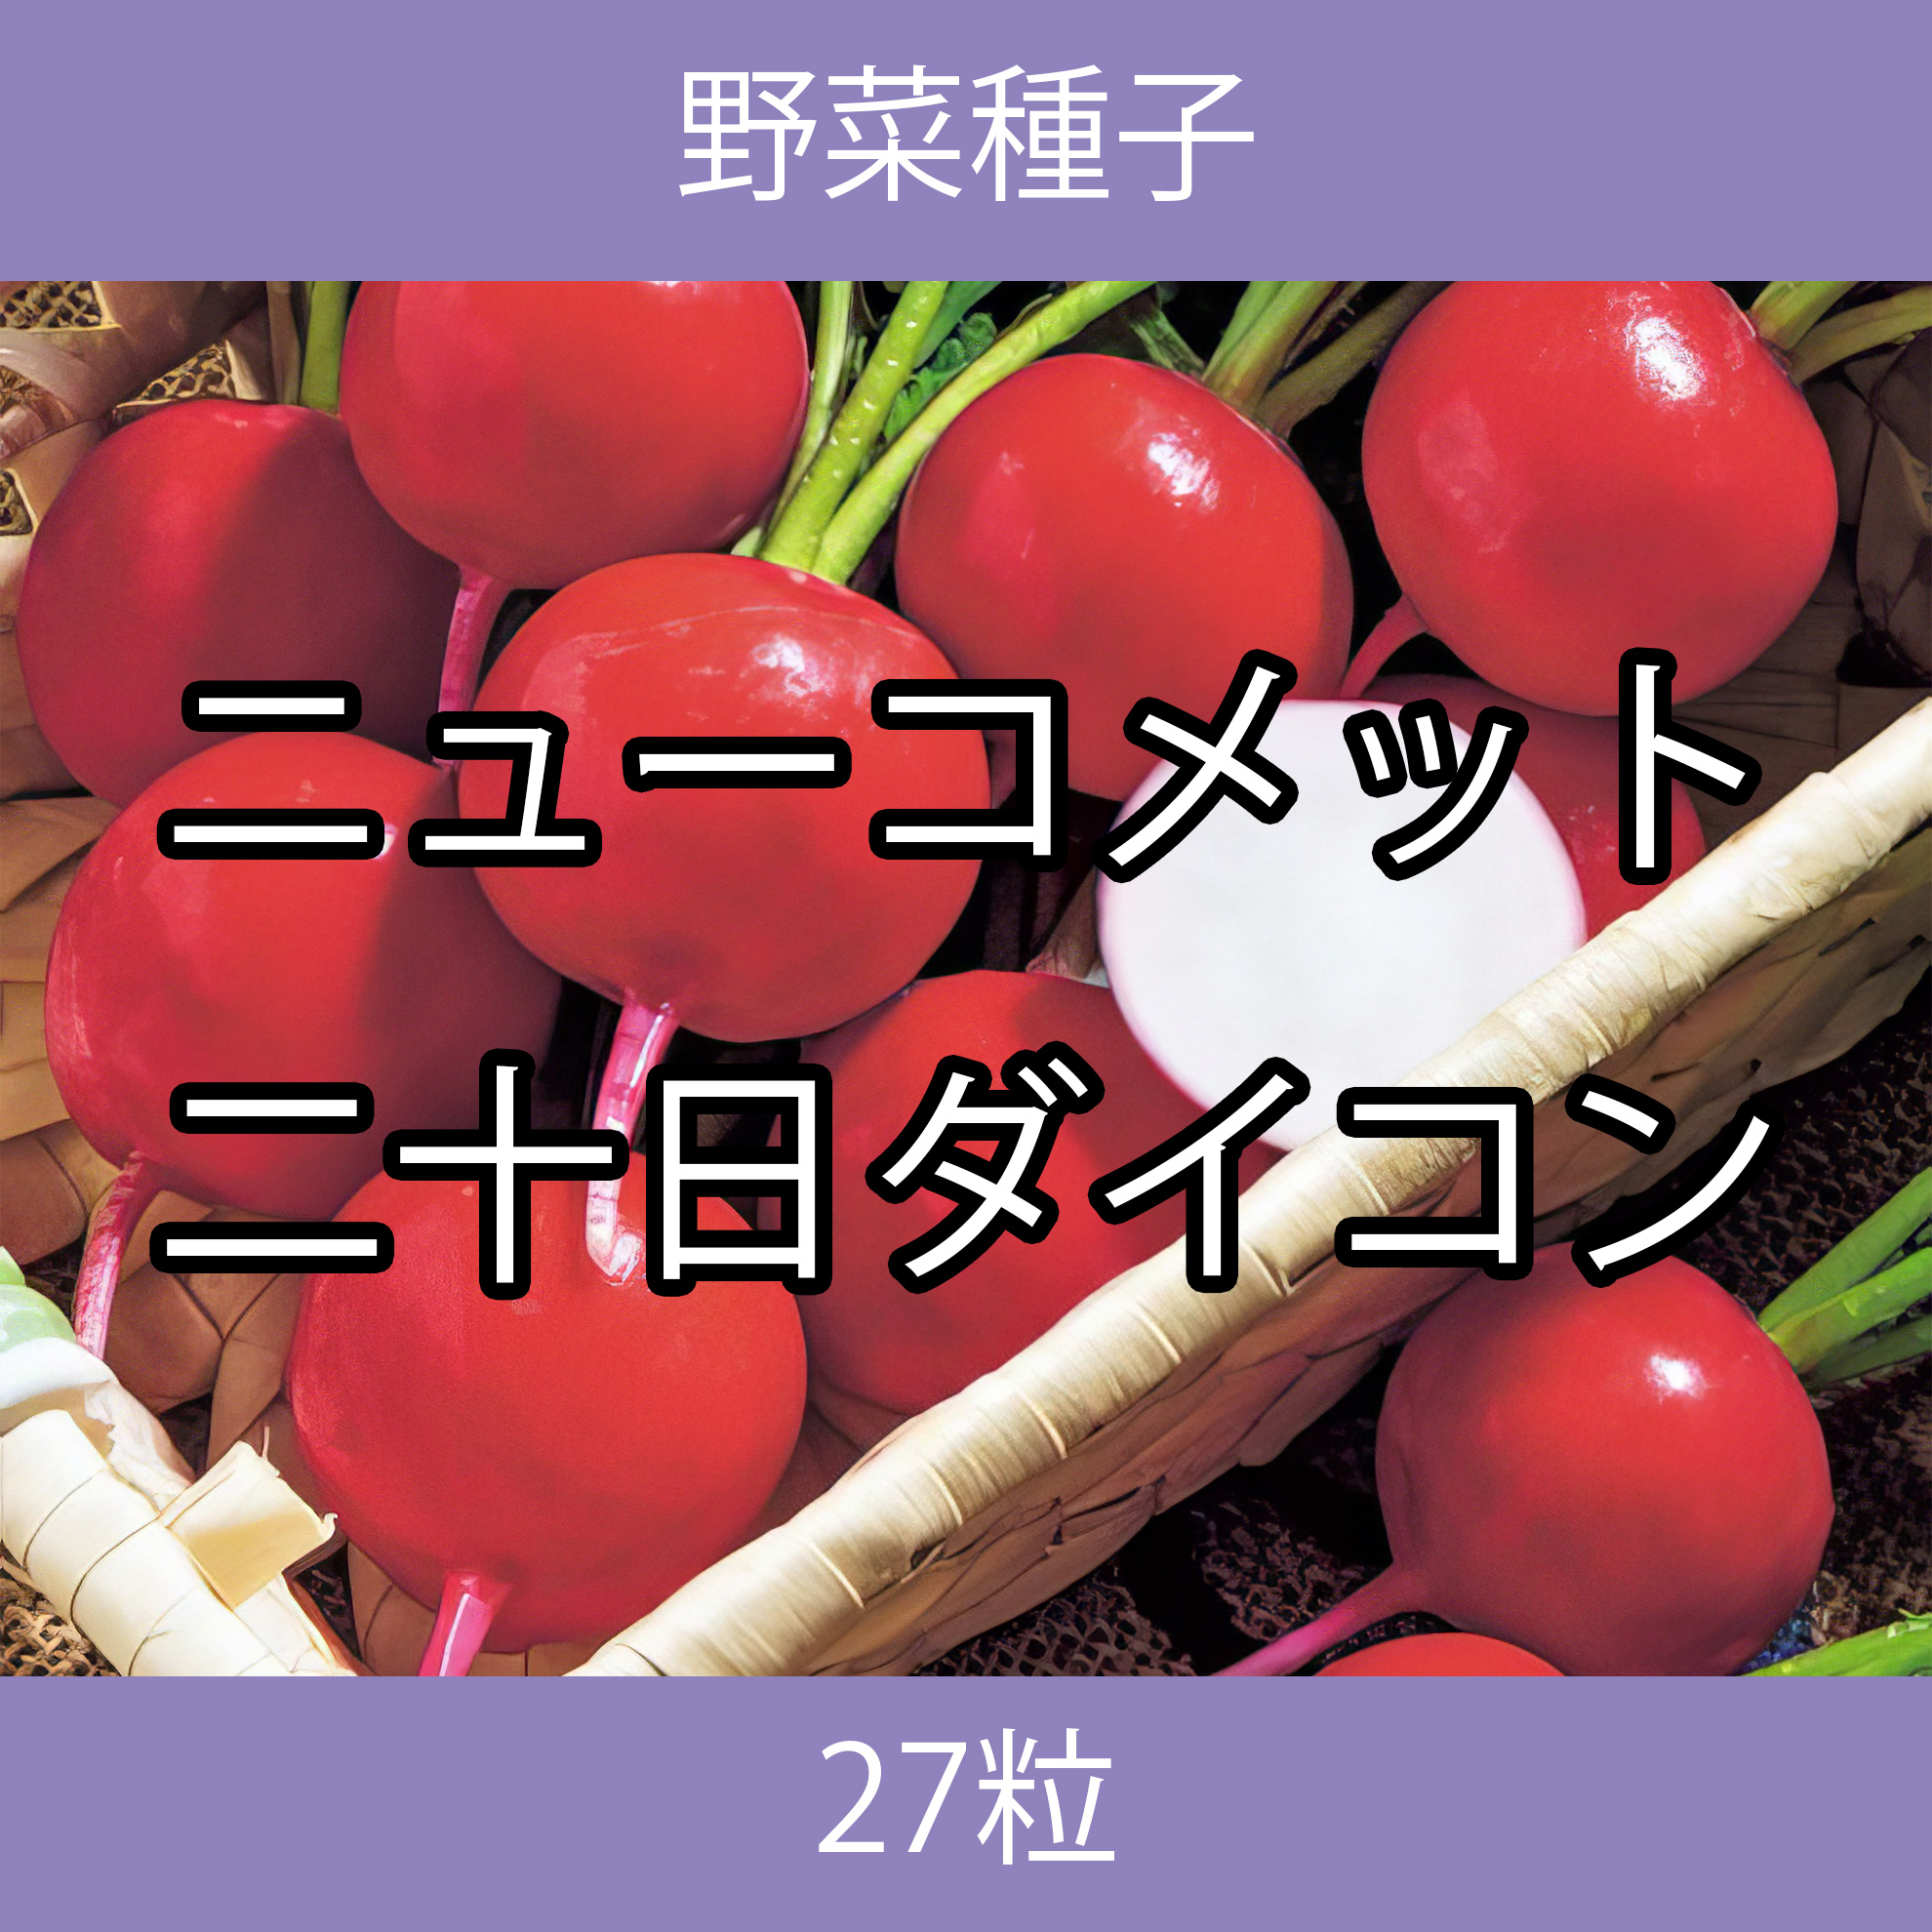 野菜種子 TVF08 ニューコメット二十日ダイコン 27粒